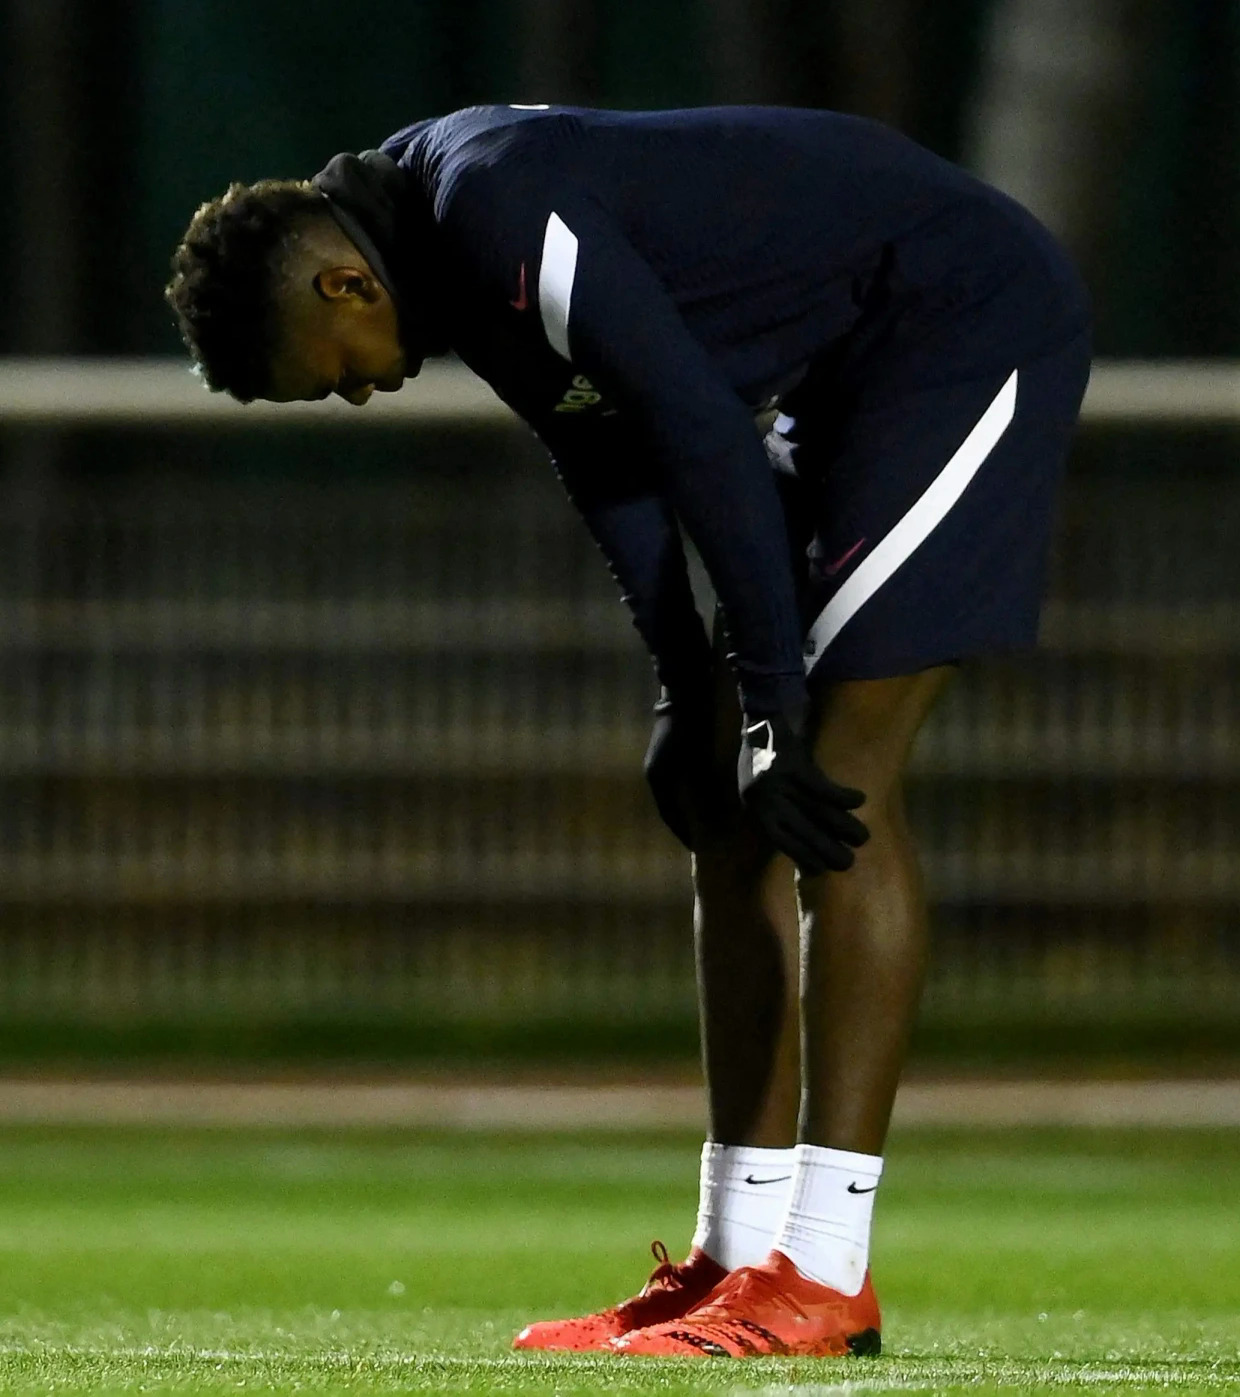 Paul Pogba gặp chấn thương đùi phải trong buổi tập cùng đội tuyển Pháp